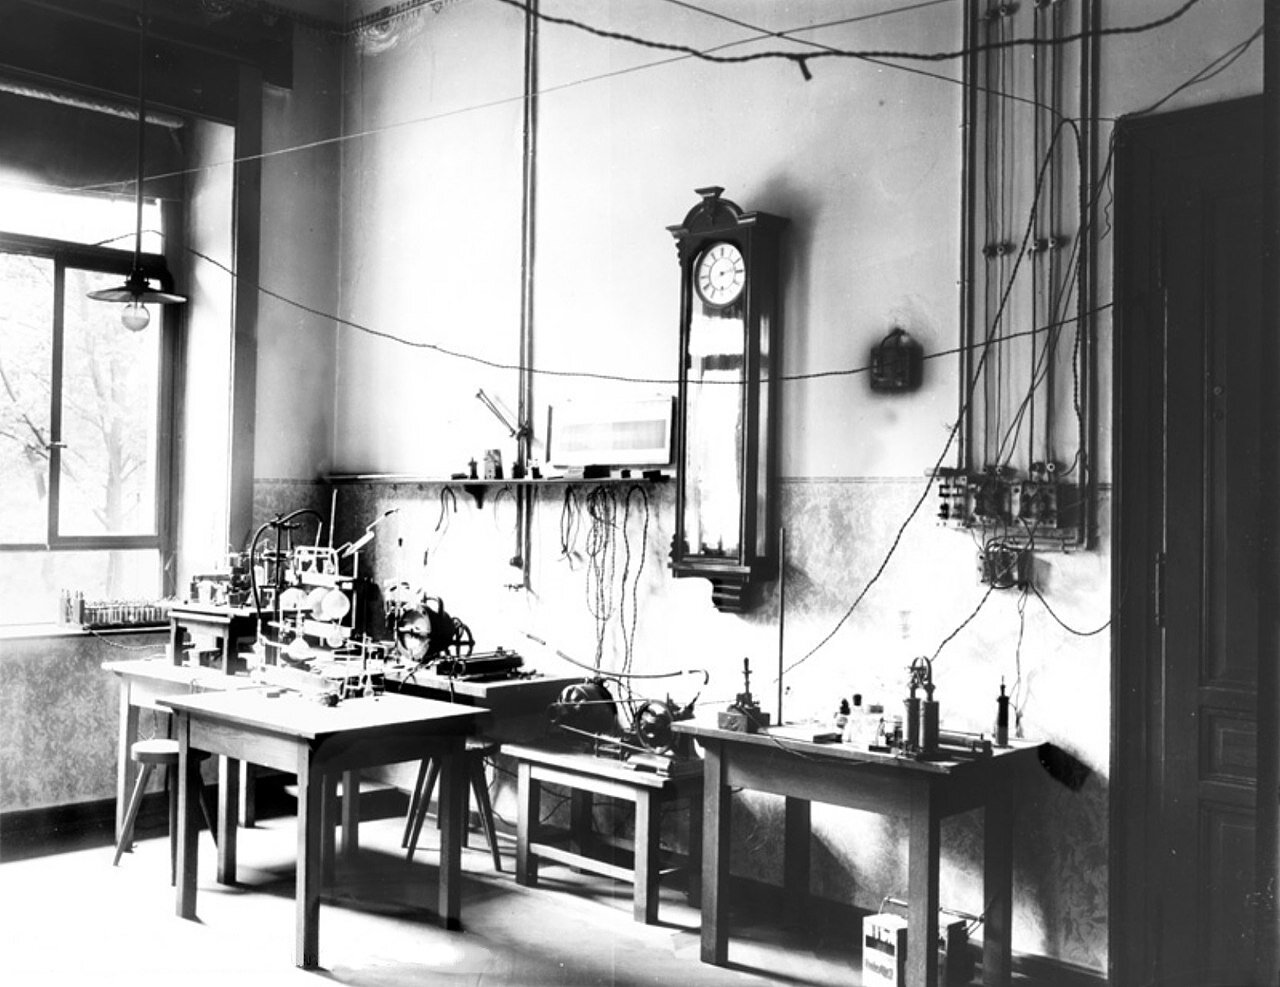 Zdjęcie przedstawia pracownię, a ściślej mówiąc laboratorium Wilhelma Roentgena. Przestrzenne wnętrze z wysokim sufitem, pod ścianą stoły, lampy, kable, szklane naczynia. 